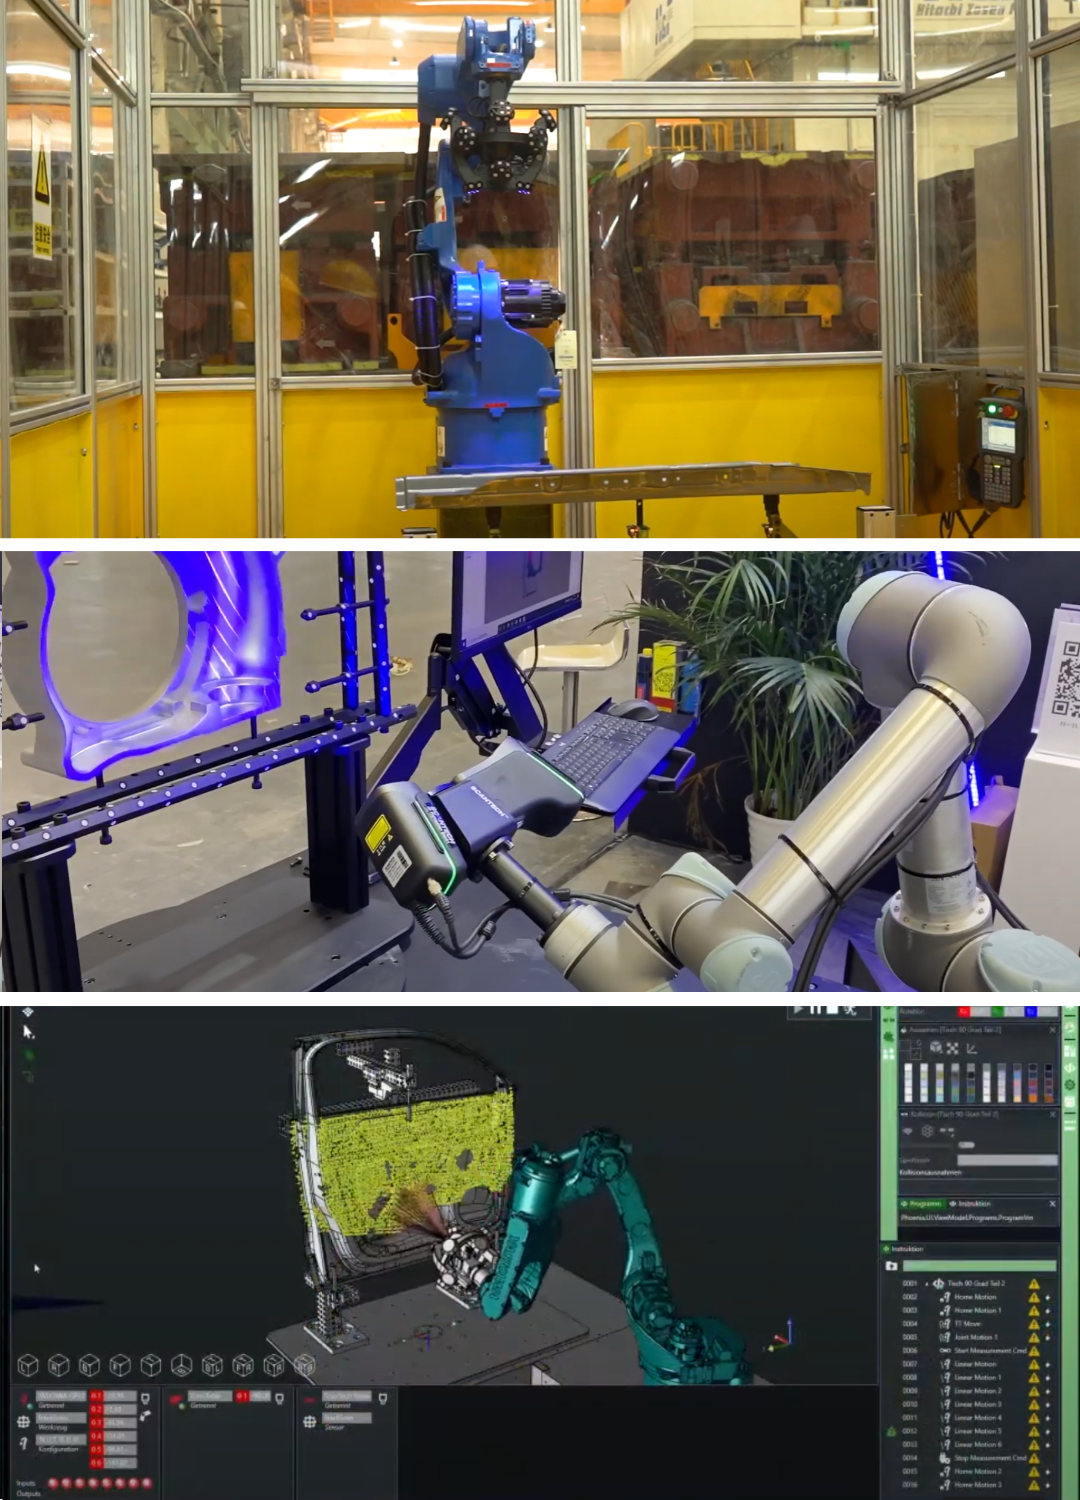 cellules de contrôles dimensionnels sur mesure avec scanners 3d scantech et rail de translation, plateau tournant, robot